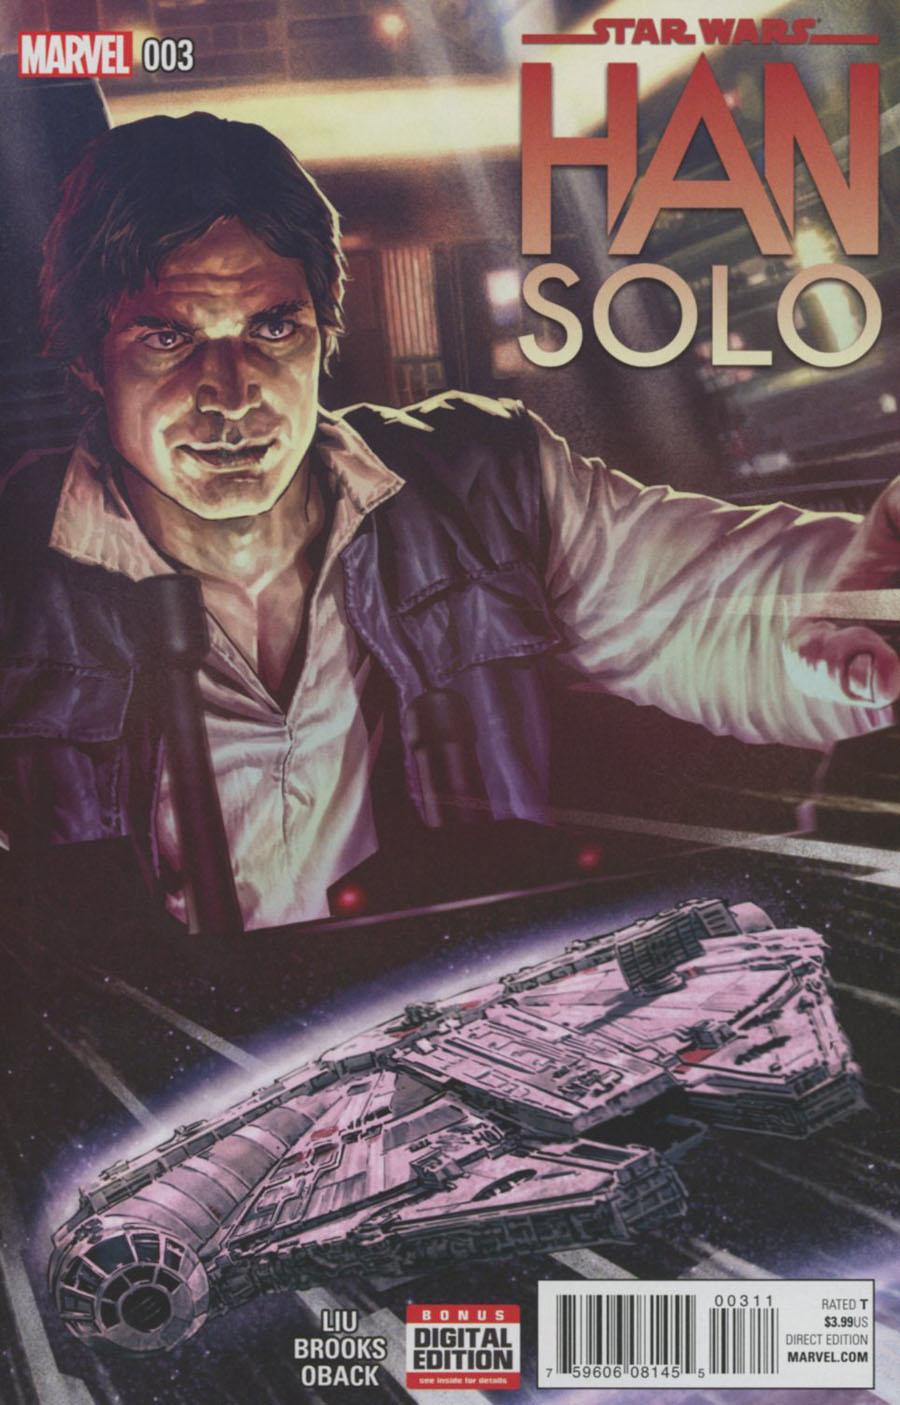 Star Wars Han Solo Vol. 1 #3